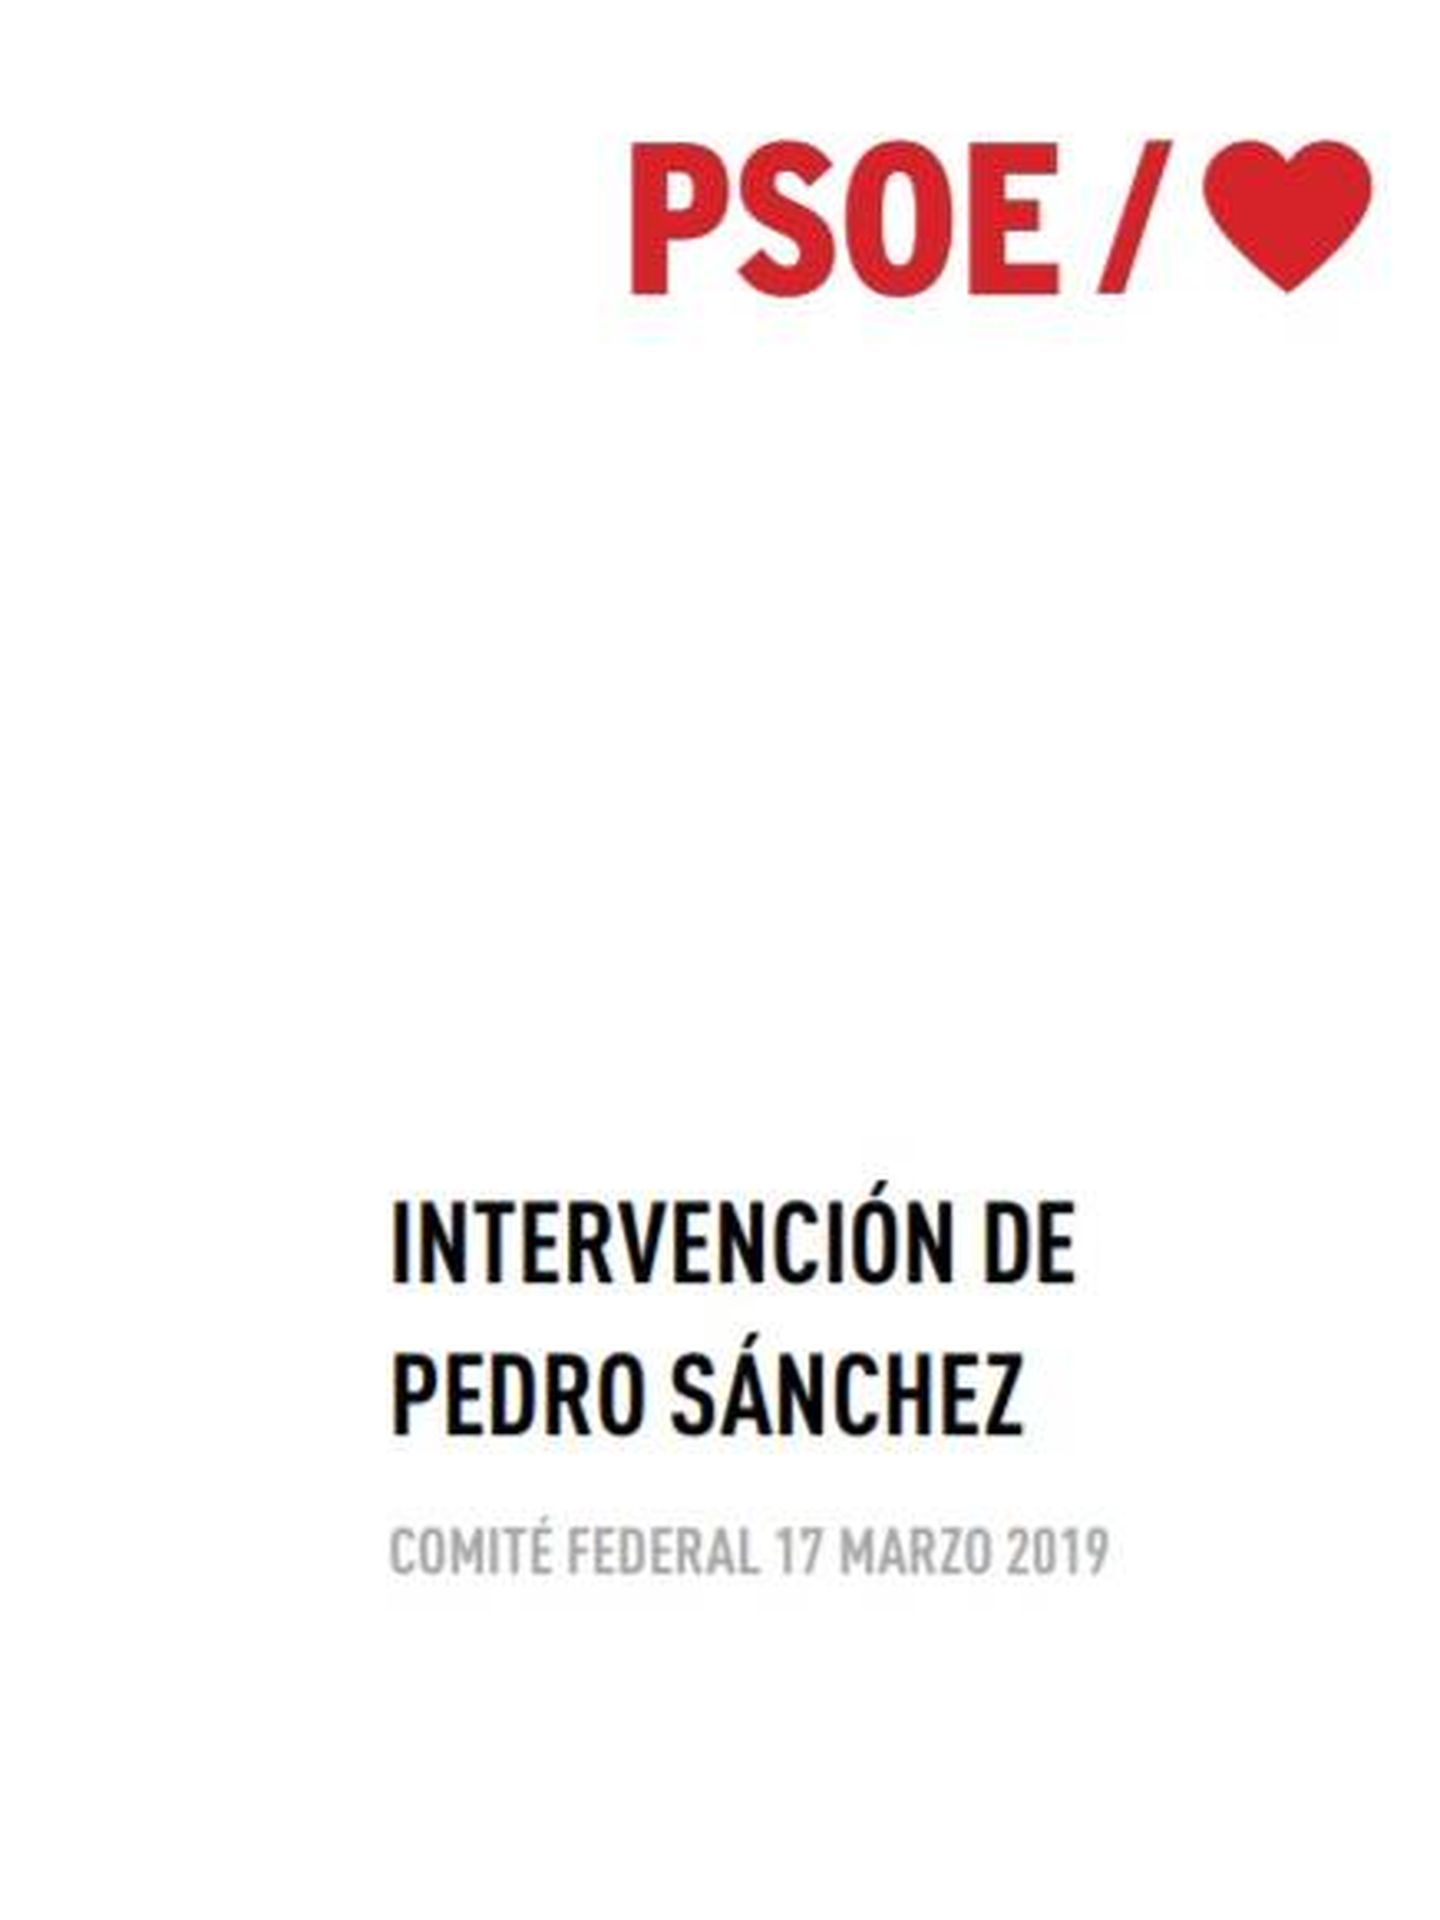 Consulte aquí en PDF la intervención de Pedro Sánchez ante el comité federal del PSOE de este 17 de marzo.